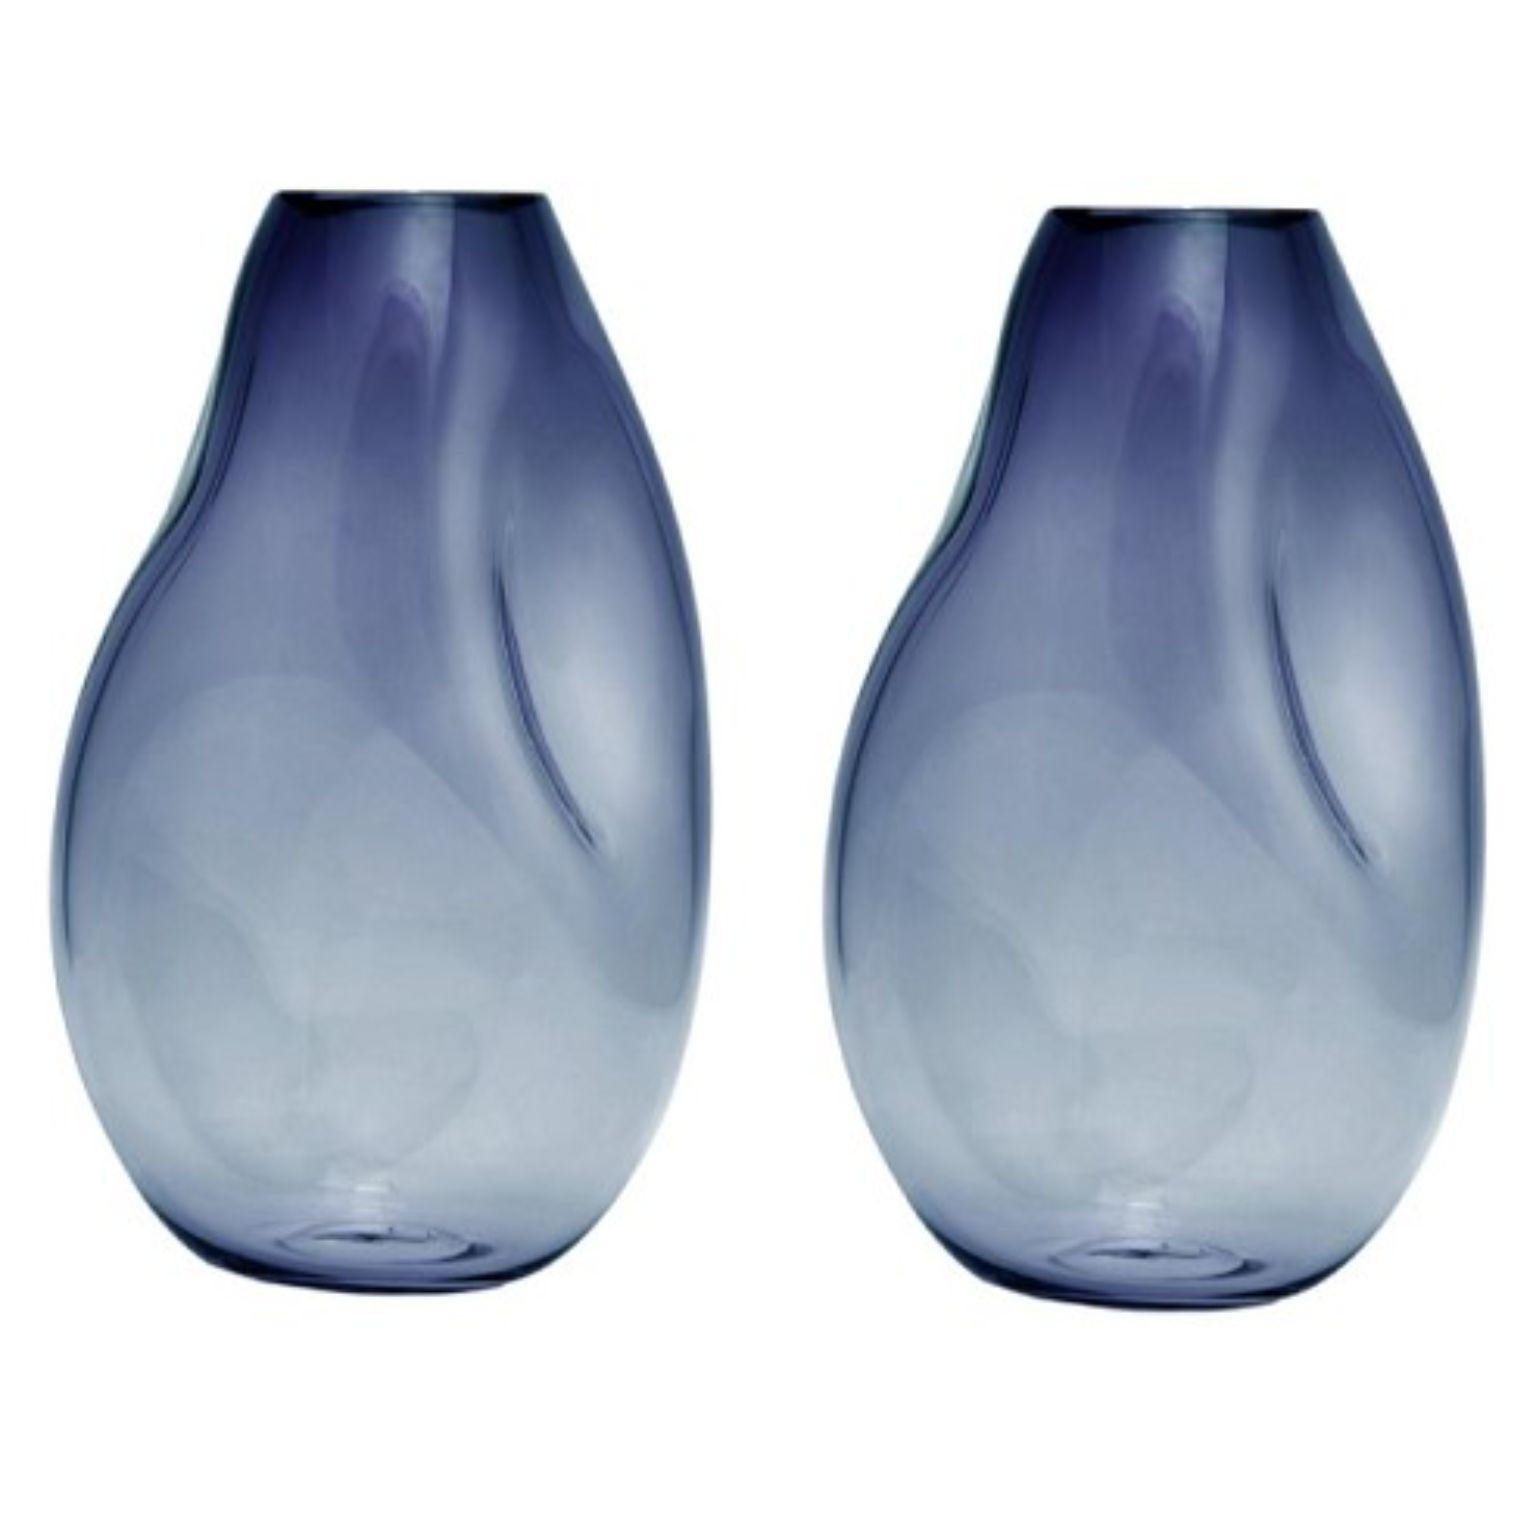 2er-Set Supernova IV stahlblaue Vasen L von ELOA
Nicht UL-gelistet 
MATERIAL: Glas
Abmessungen: T15 x B17 x H41 cm
Auch in anderen Farben und Abmessungen erhältlich.

SUPERNOVA ist eine Kollektion von Vasen und Schalen, die zwar nicht glänzen, aber